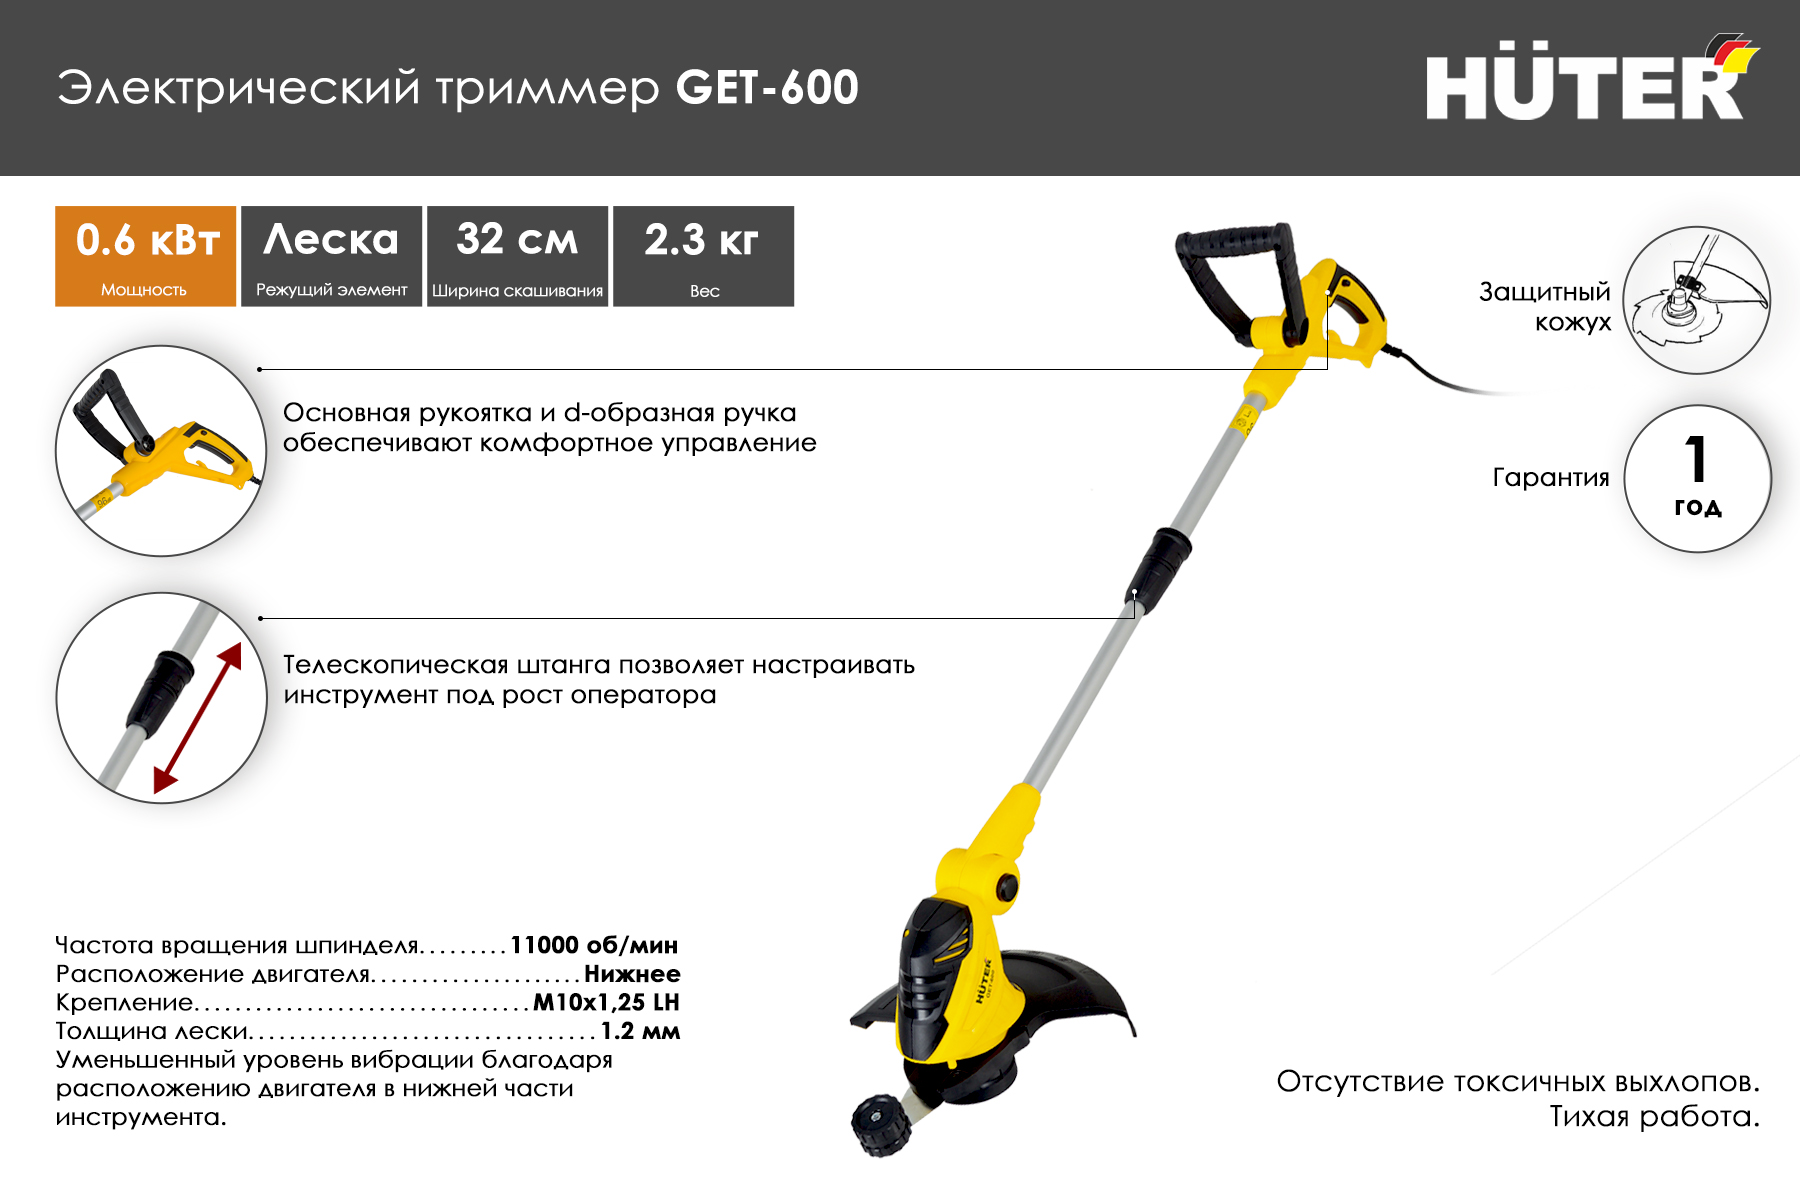 Электрический триммер Huter GET-600